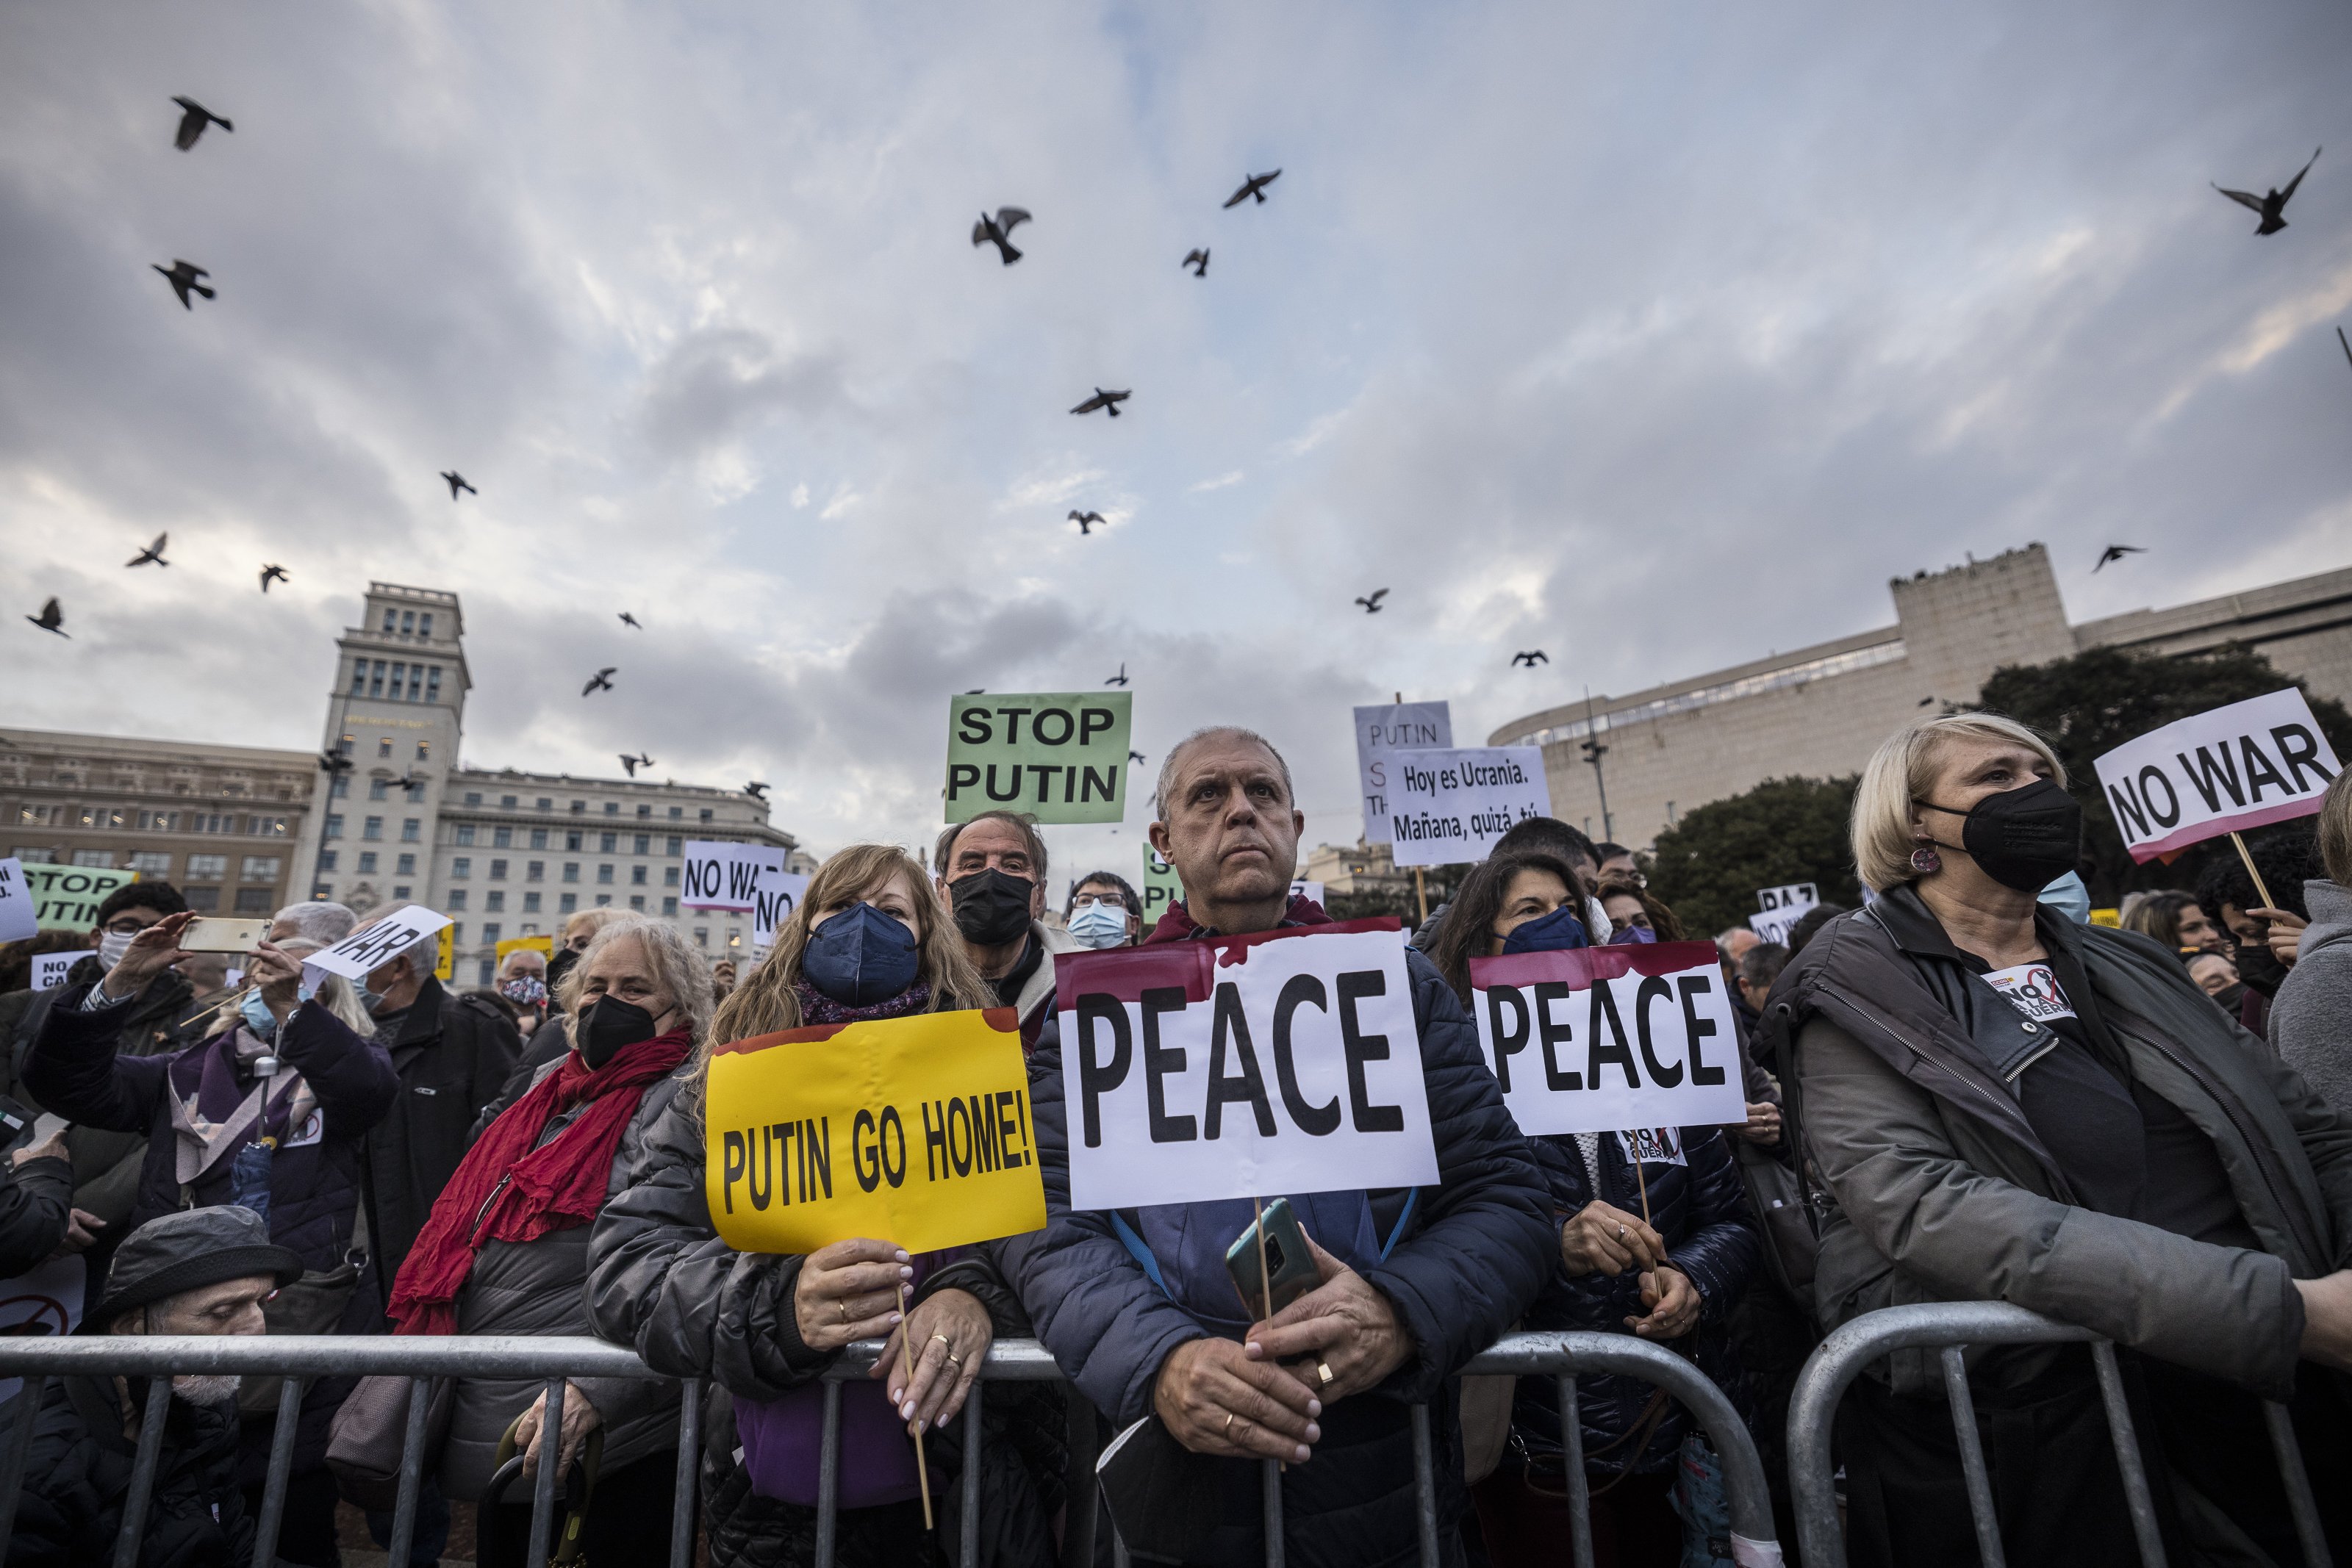 Barcelona clama contra la guerra a Ucraïna: "La pau és el camí"